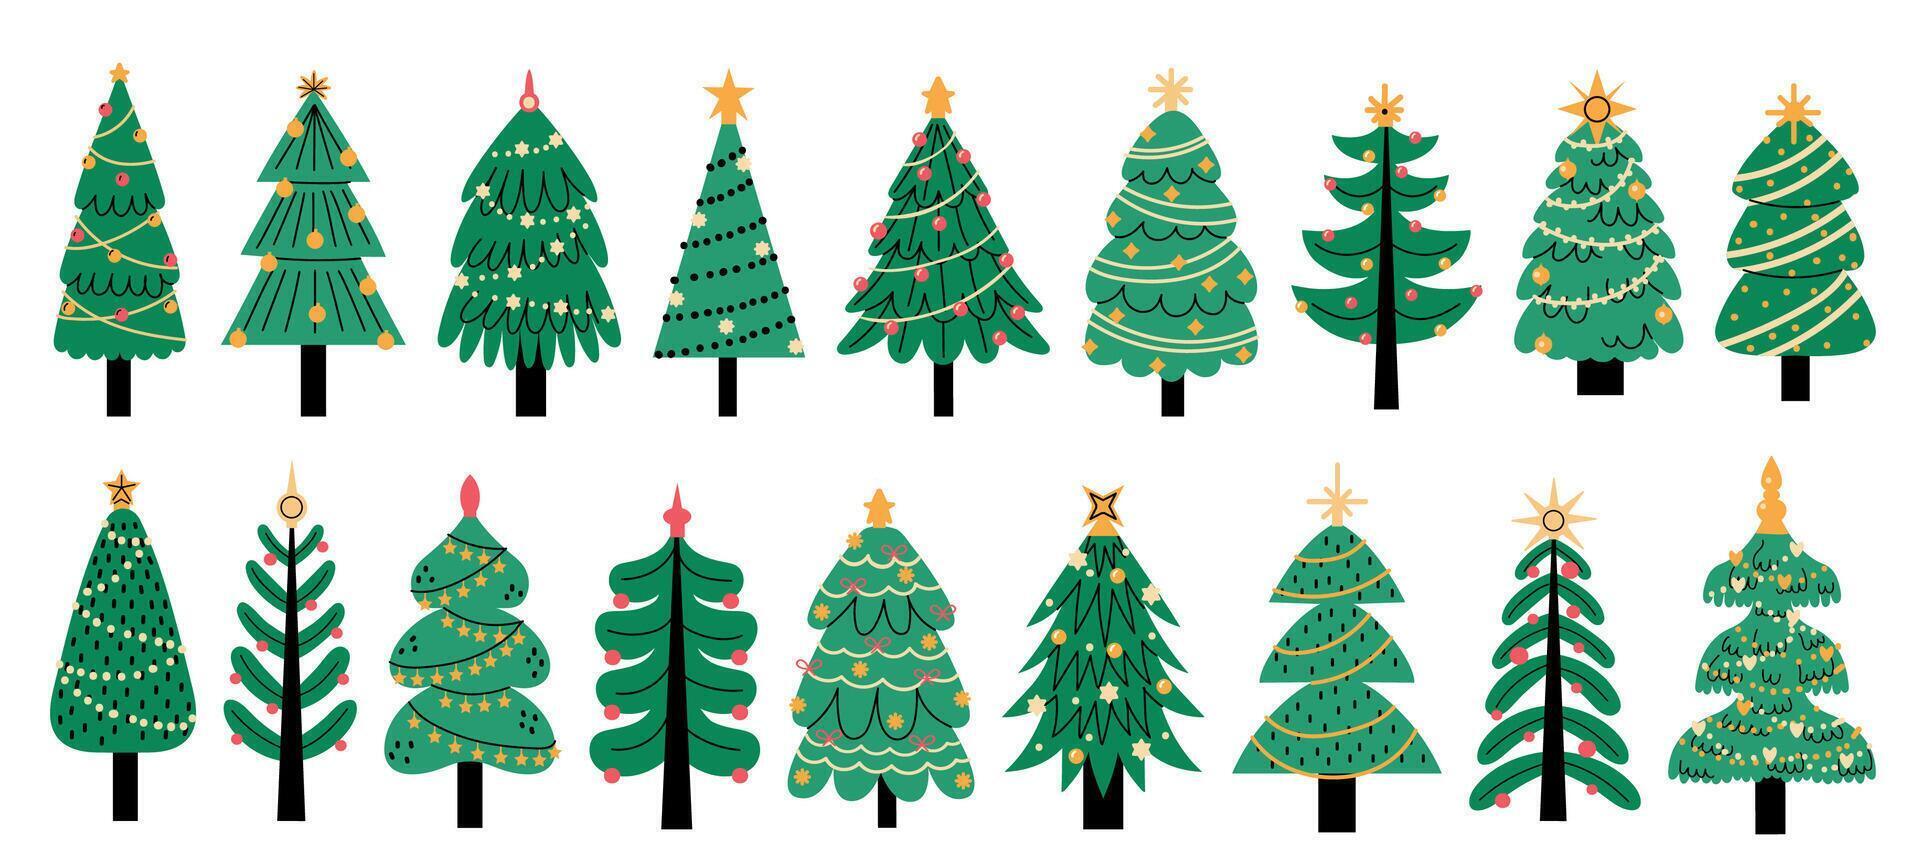 jul träd. söt färgrik ny år dekoration, traditionell xmas tallar med lampor krans stjärna för hälsning kort inbjudan baner. vektor uppsättning